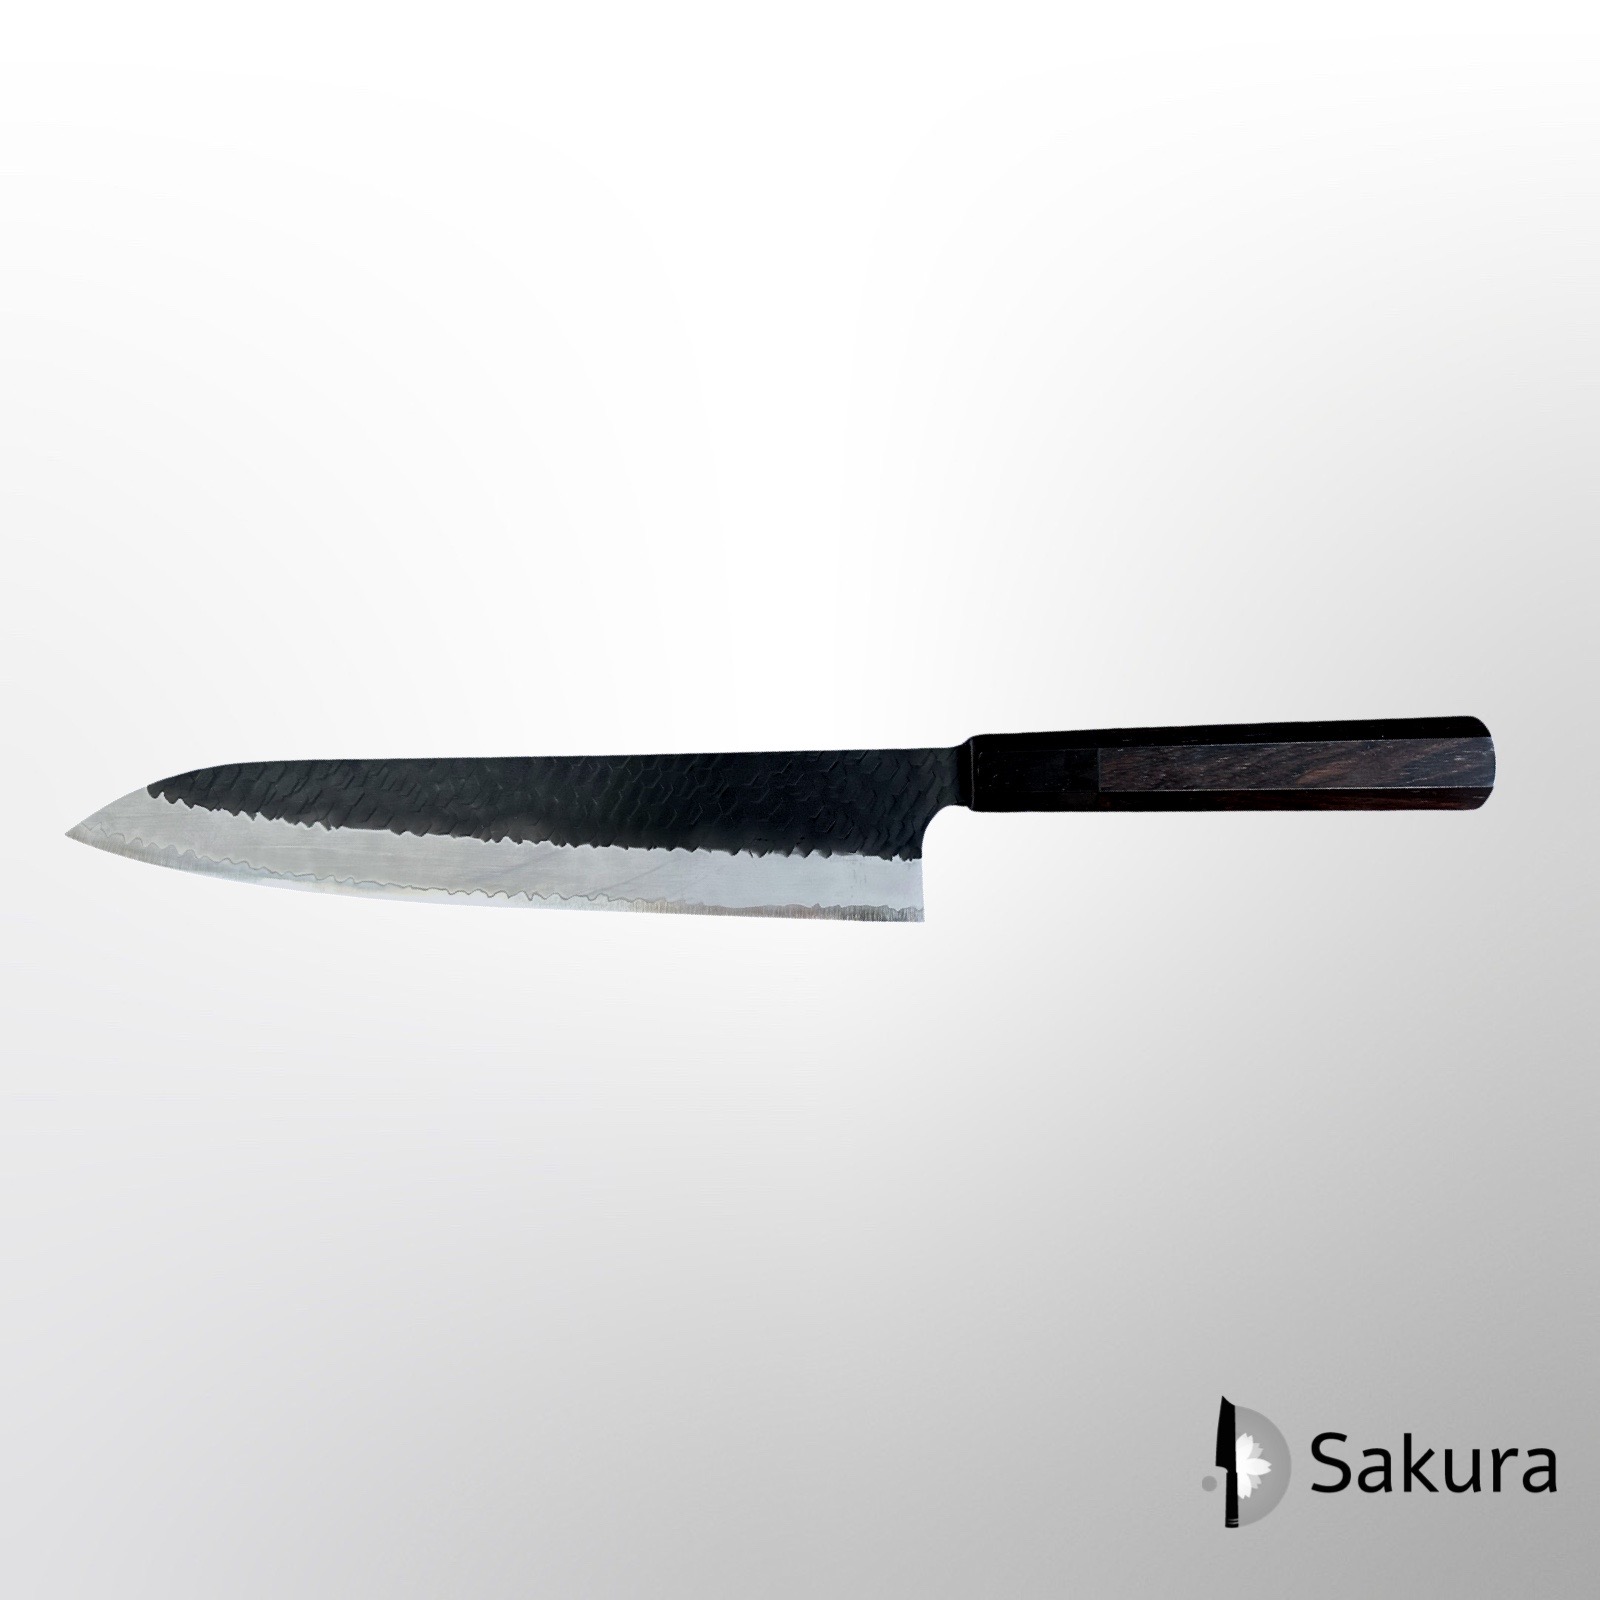 סכין שף רב-תכליתית גִּיוּטוֹ 270מ״מ מחושלת בעבודת יד 3 שכבות: פלדת פחמן יפנית מתקדמת מסוג R2/SG2 עטופה פלדת אל-חלד גימור קורואיצ׳י שחור עם ריקוע פטיש ניגארה יפן  SKNIGASG2GTKP2716